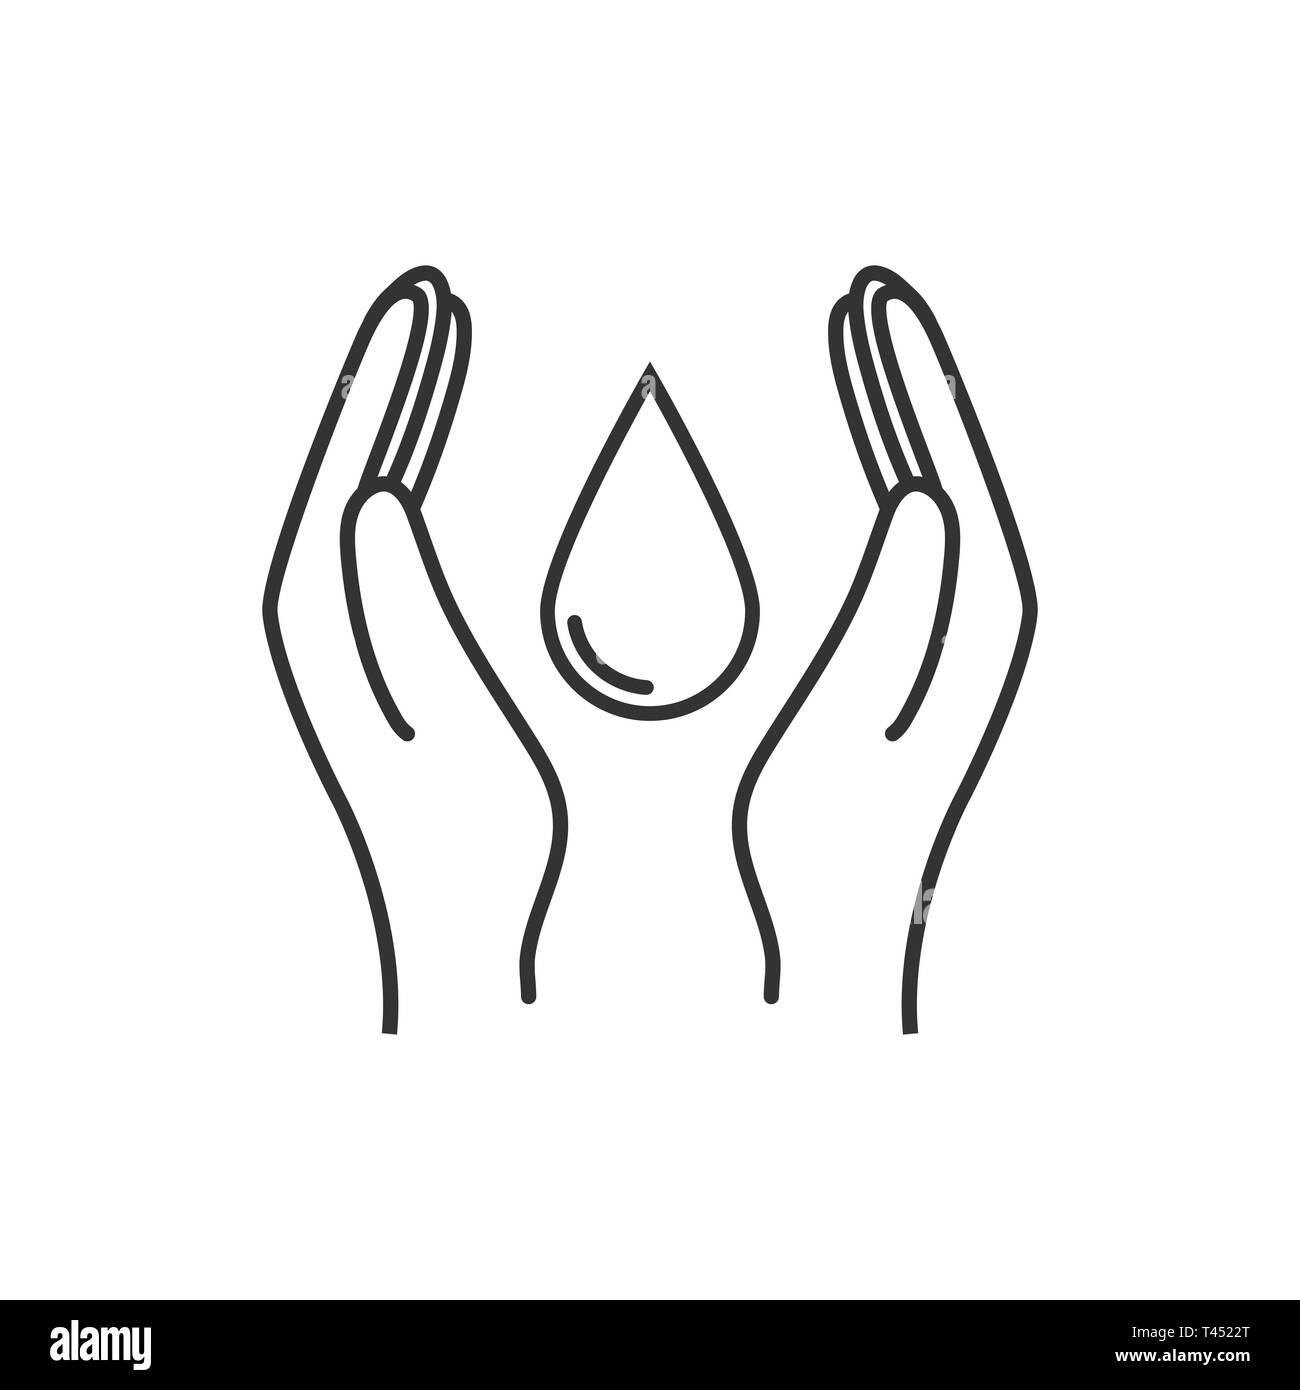 Économiser de l'eau signe. L'icône de la main tient l'eau goutte. Illustration vectorielle, modèle plat. Illustration de Vecteur